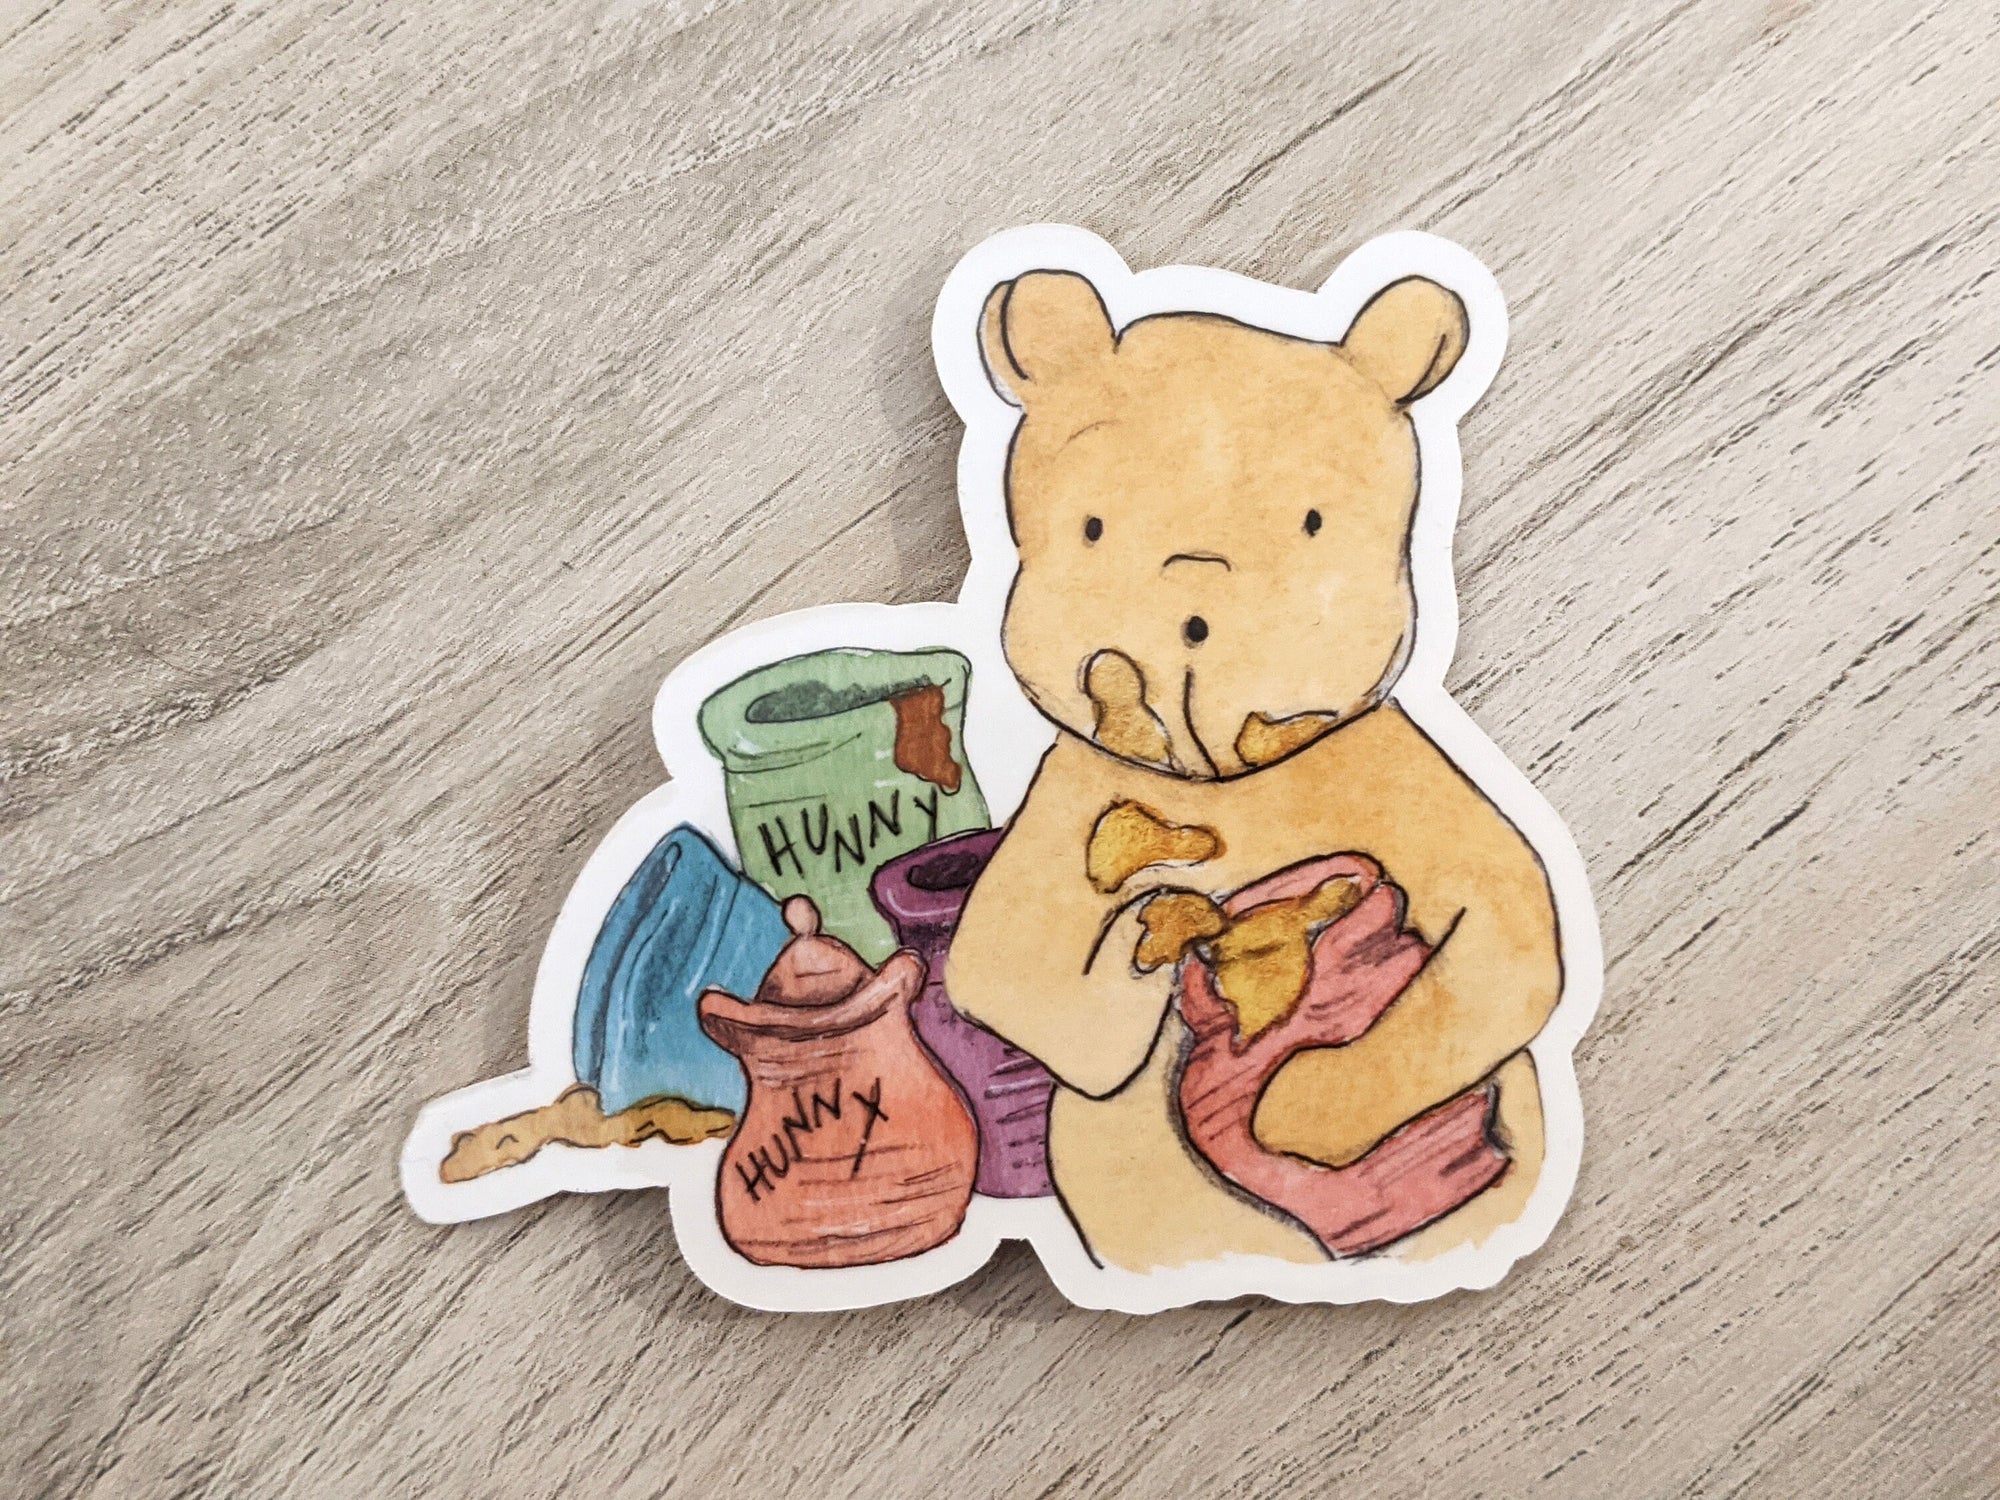 Winnie-the-Pooh Loves Honey Sticker by A. A. Milne